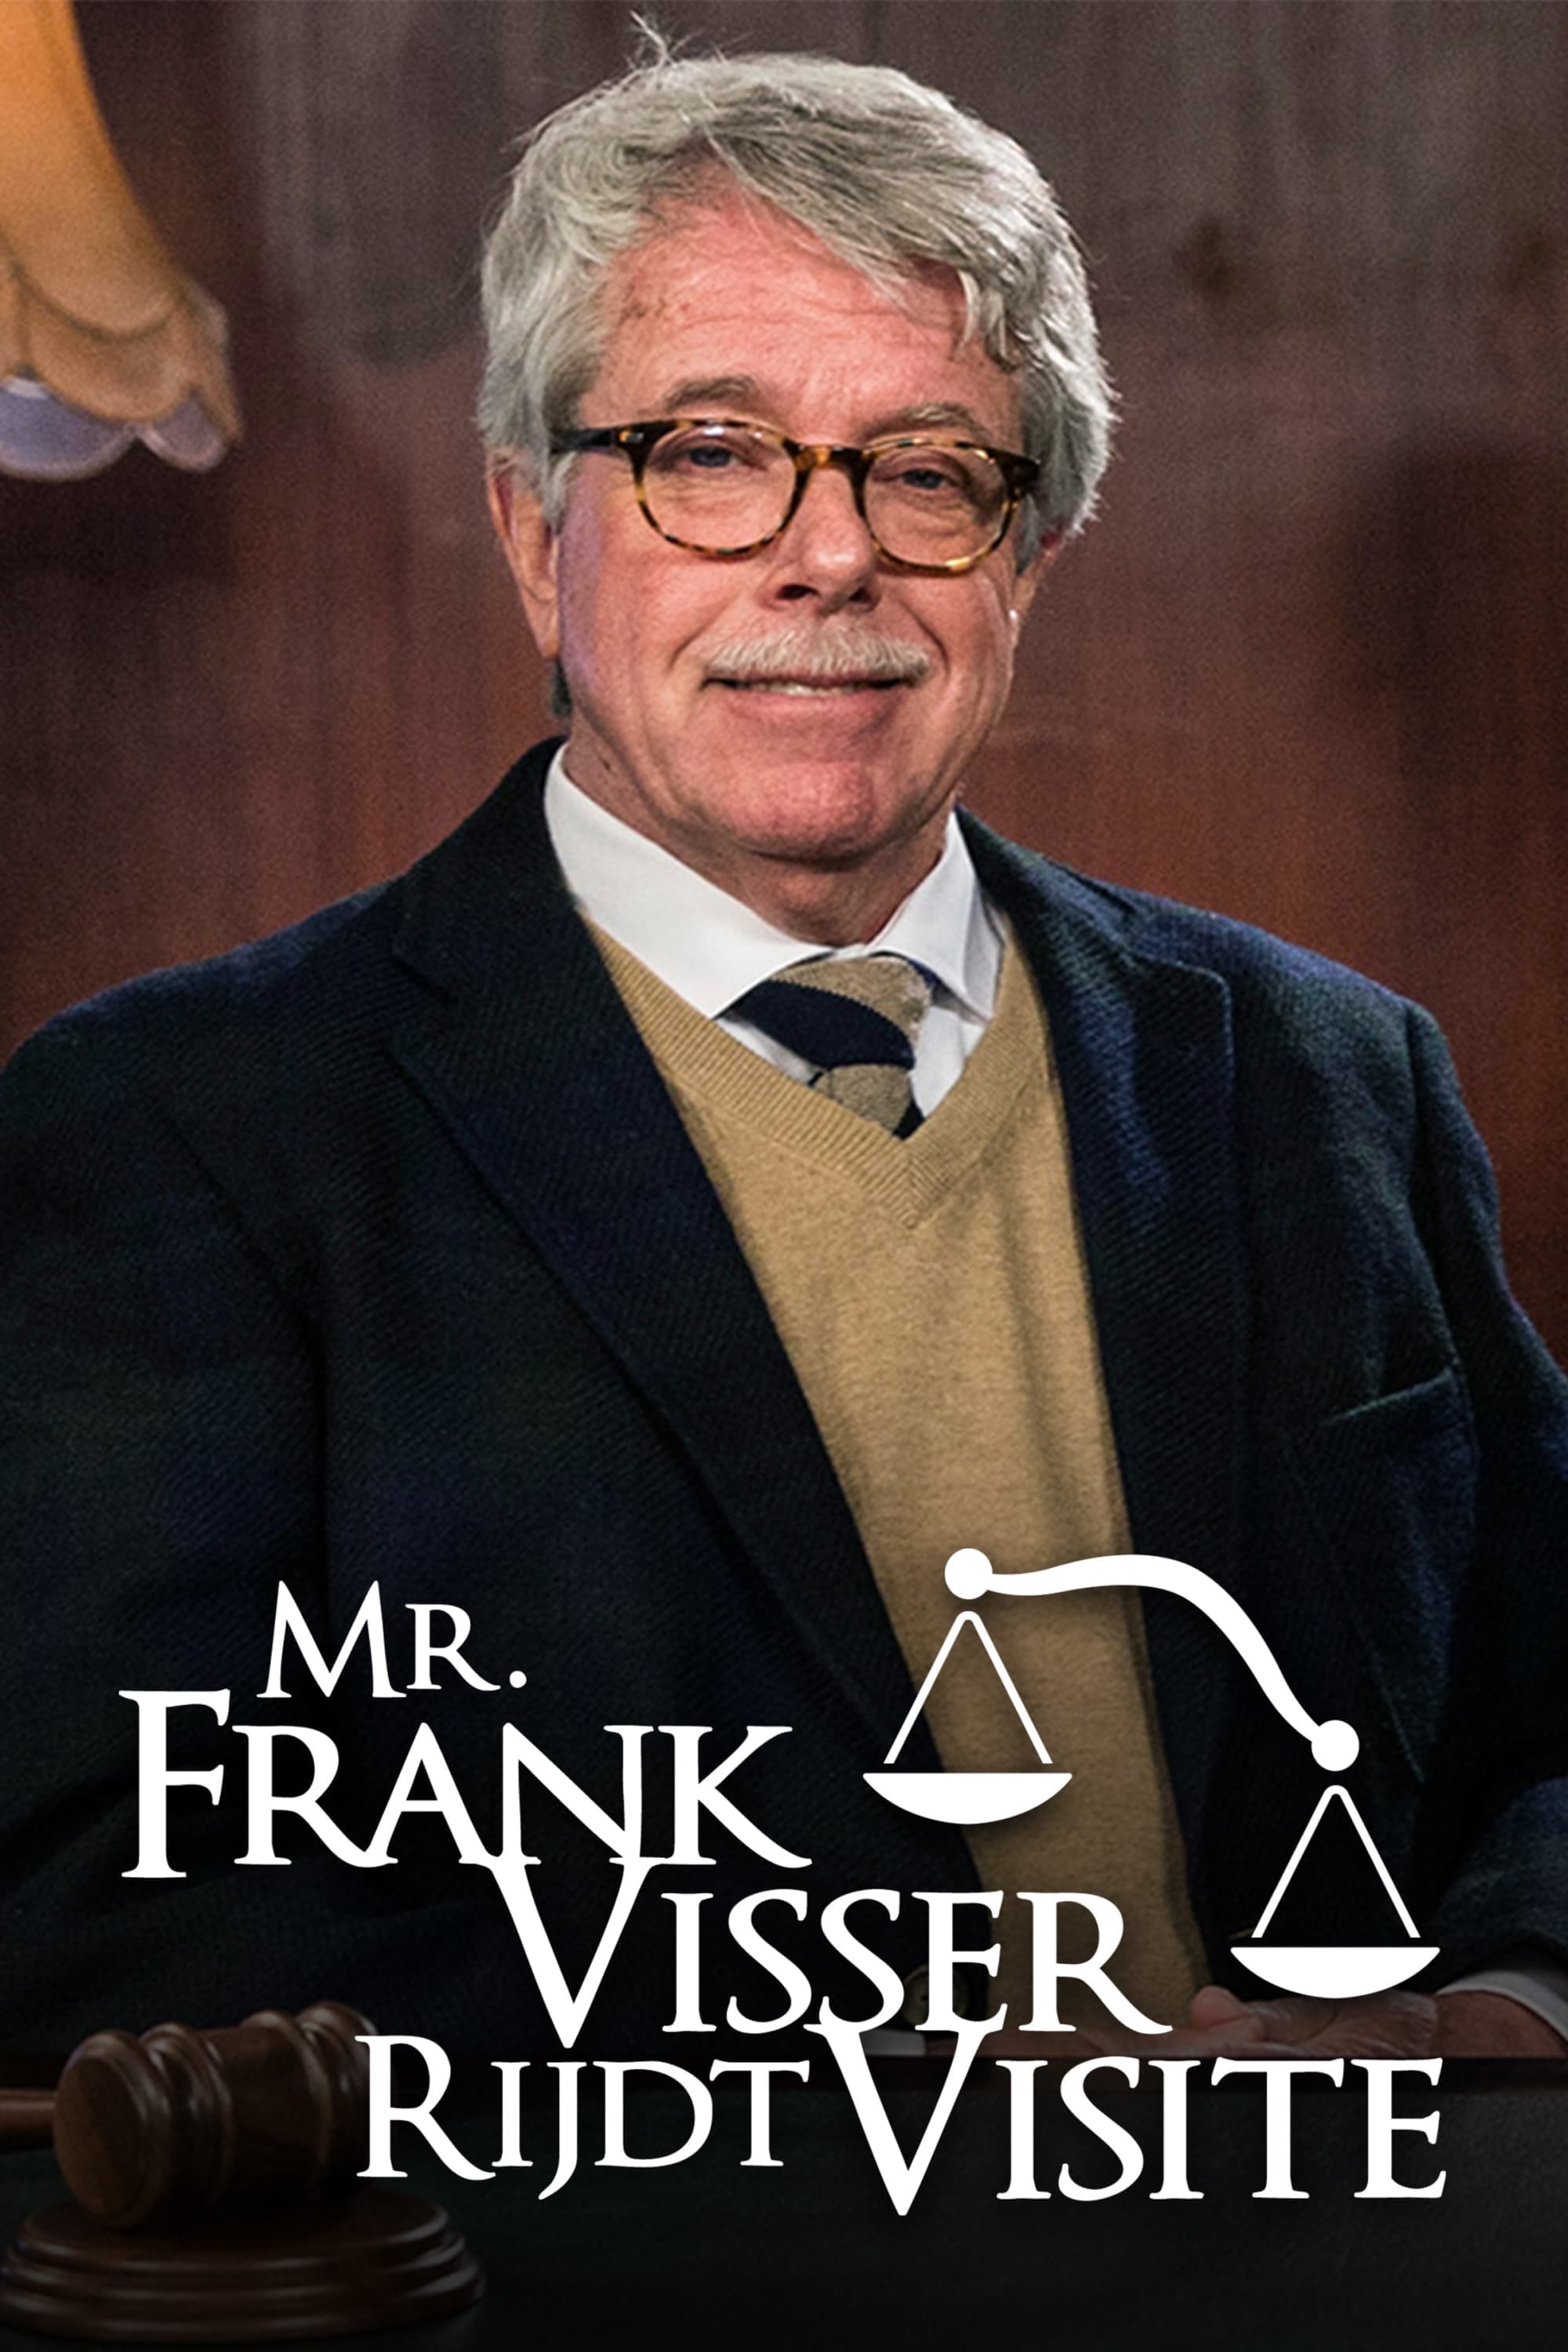 Mr. Frank Visser rijdt visite